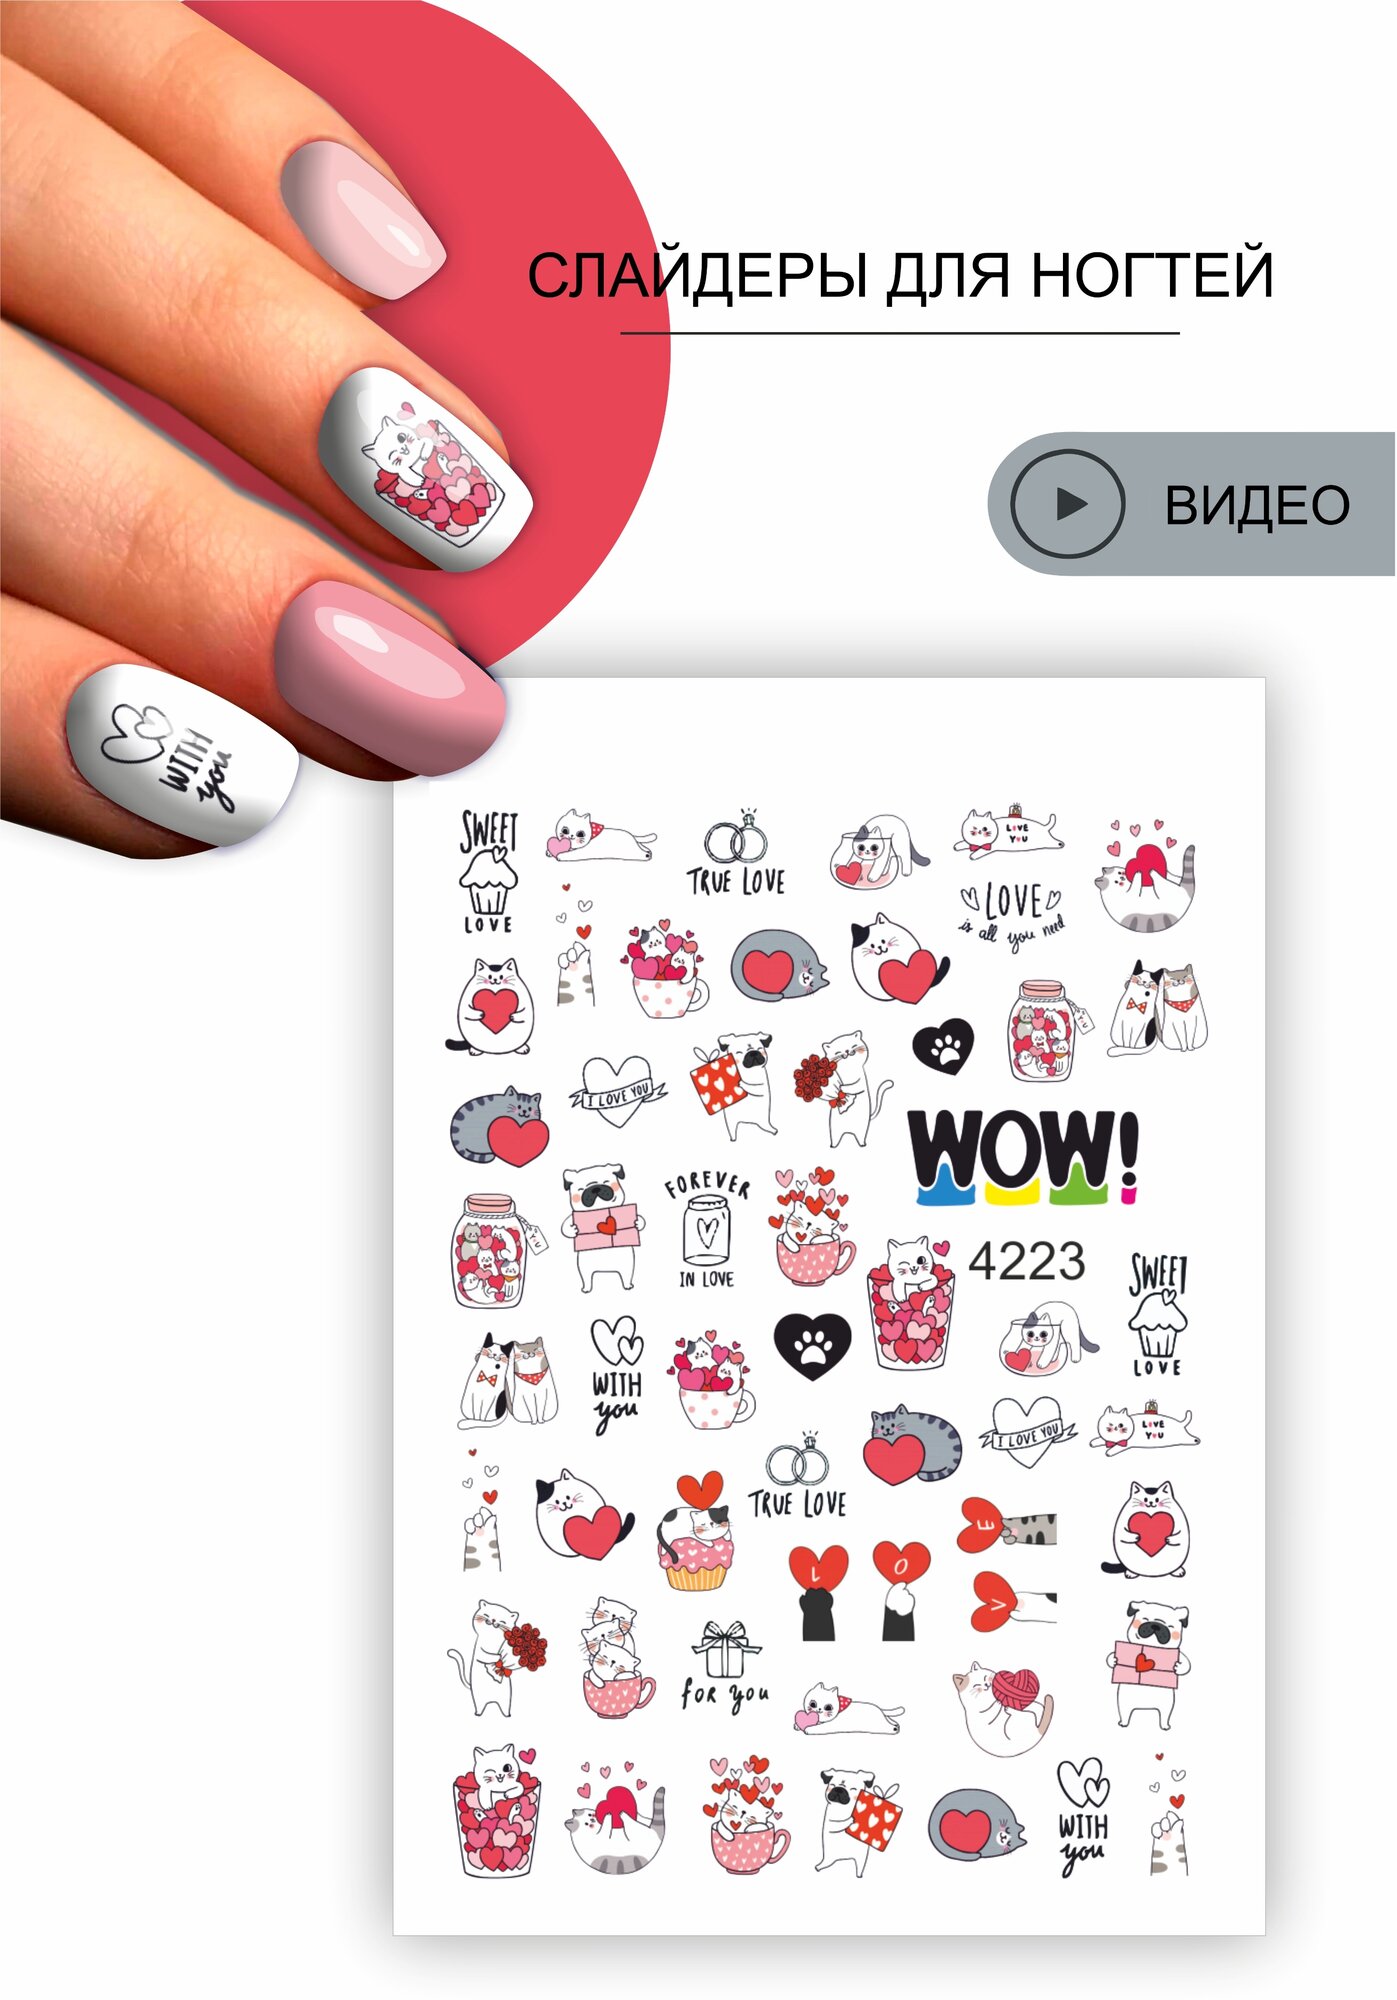 I am WOW Слайдер для ногтей водные наклейки маникюра декор на ногти для дизайна. Кошки, надписи , сердечки, любовь. День влюбленных